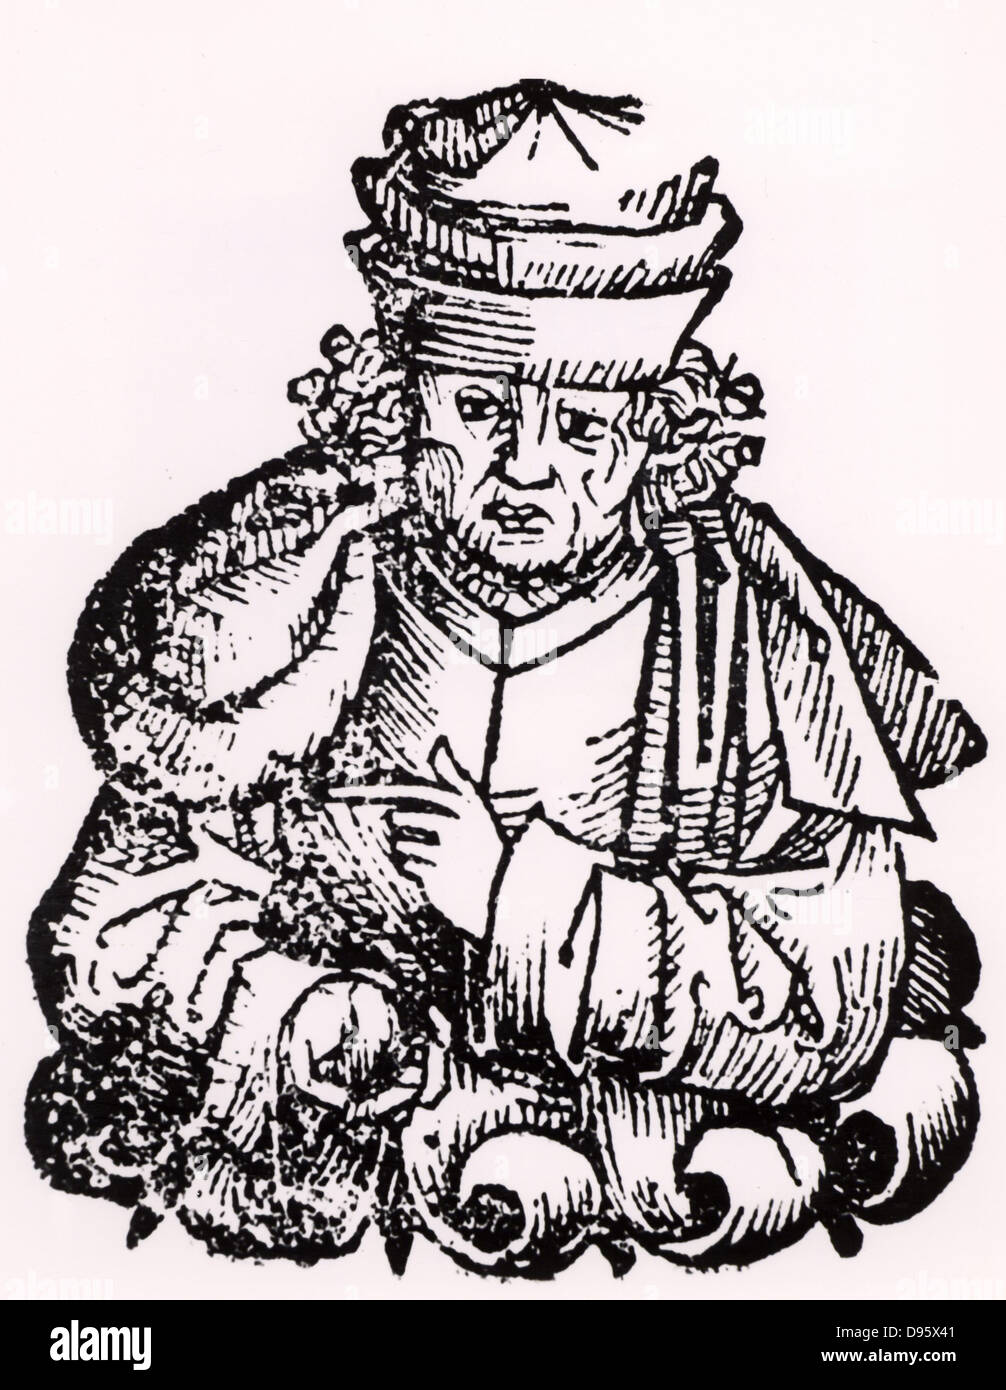 Giovanni Boccaccio de Certaldo (1313-75) Italienische Schriftsteller, Autor des 'Decameron' (1358). Holzschnitt aus "Liber chronicarum mundi" (Nürnberg Chronik" von Hartmann Schedel (Nürnberg, 1493). Stockfoto